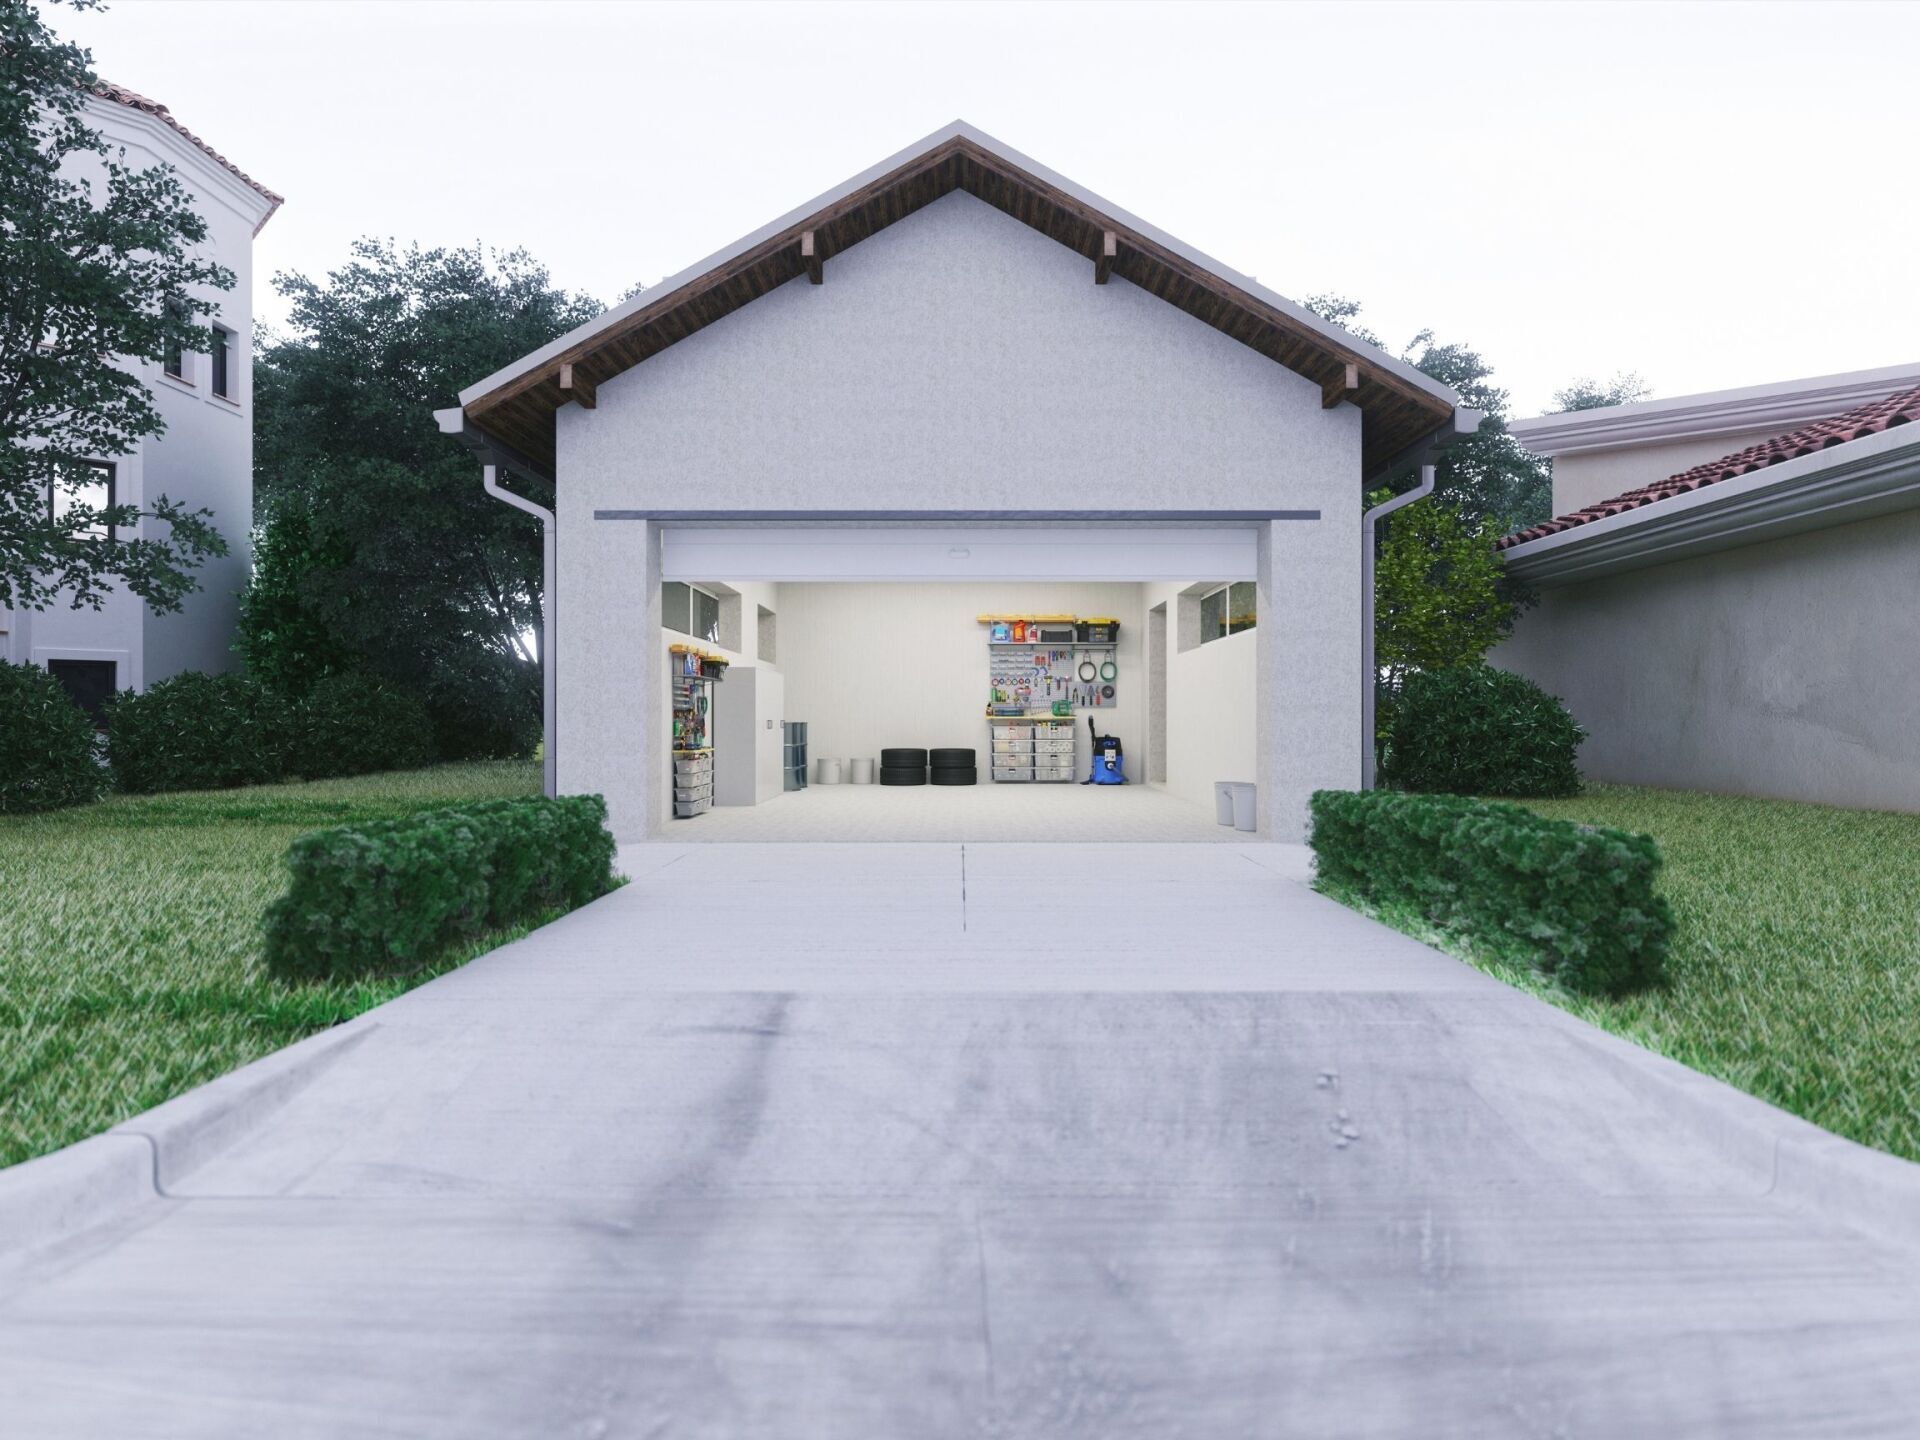 concrete driveway with garage door open